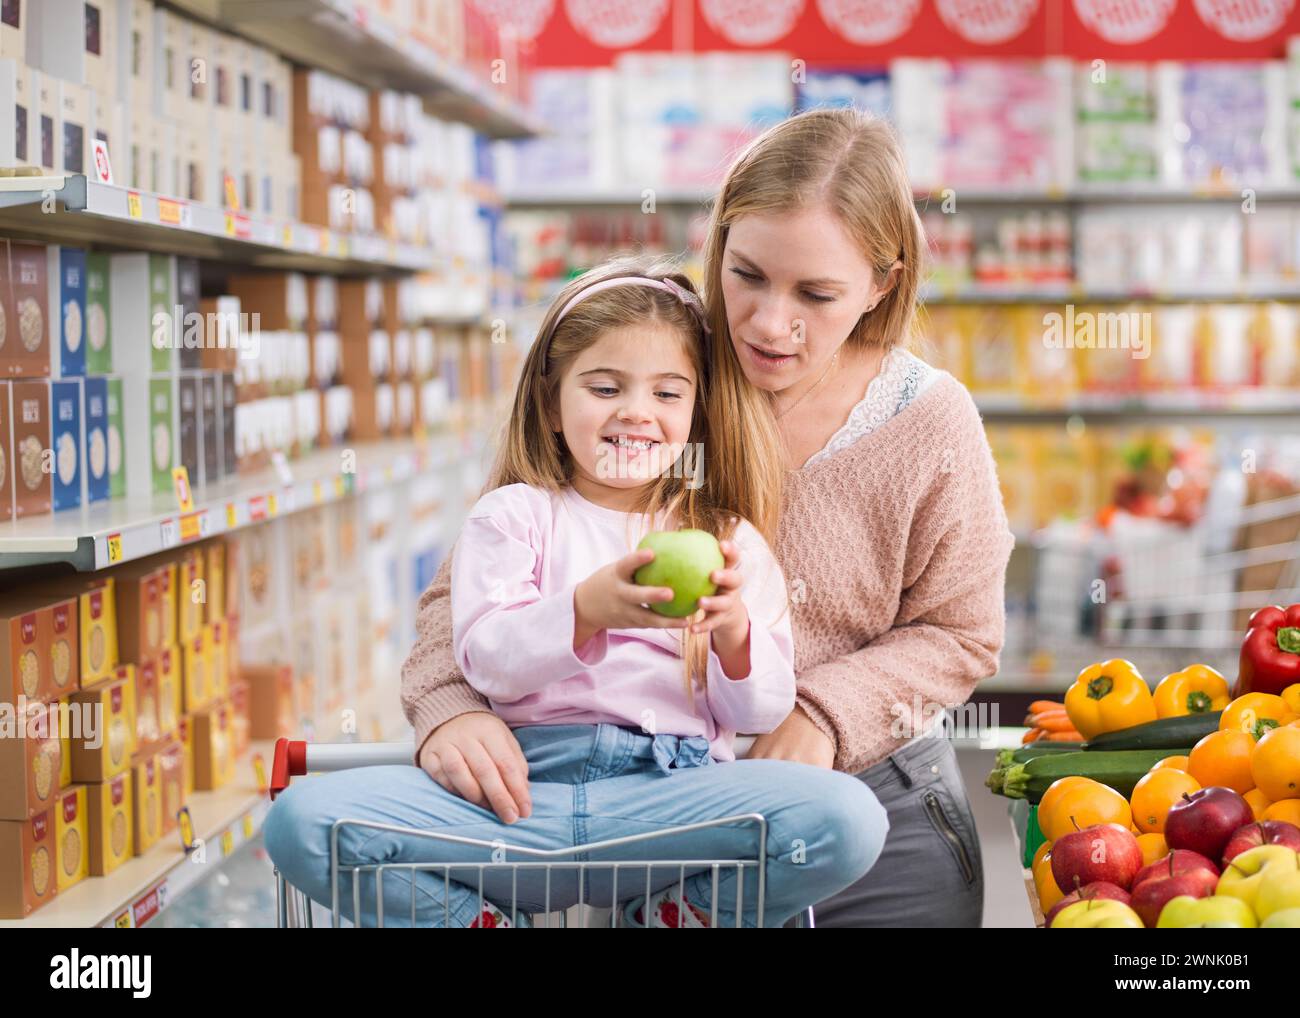 Glückliches süßes Mädchen, das auf einem Einkaufswagen sitzt und frisches Gemüse und Obst mit ihrer Mutter im Supermarkt kauft Stockfoto